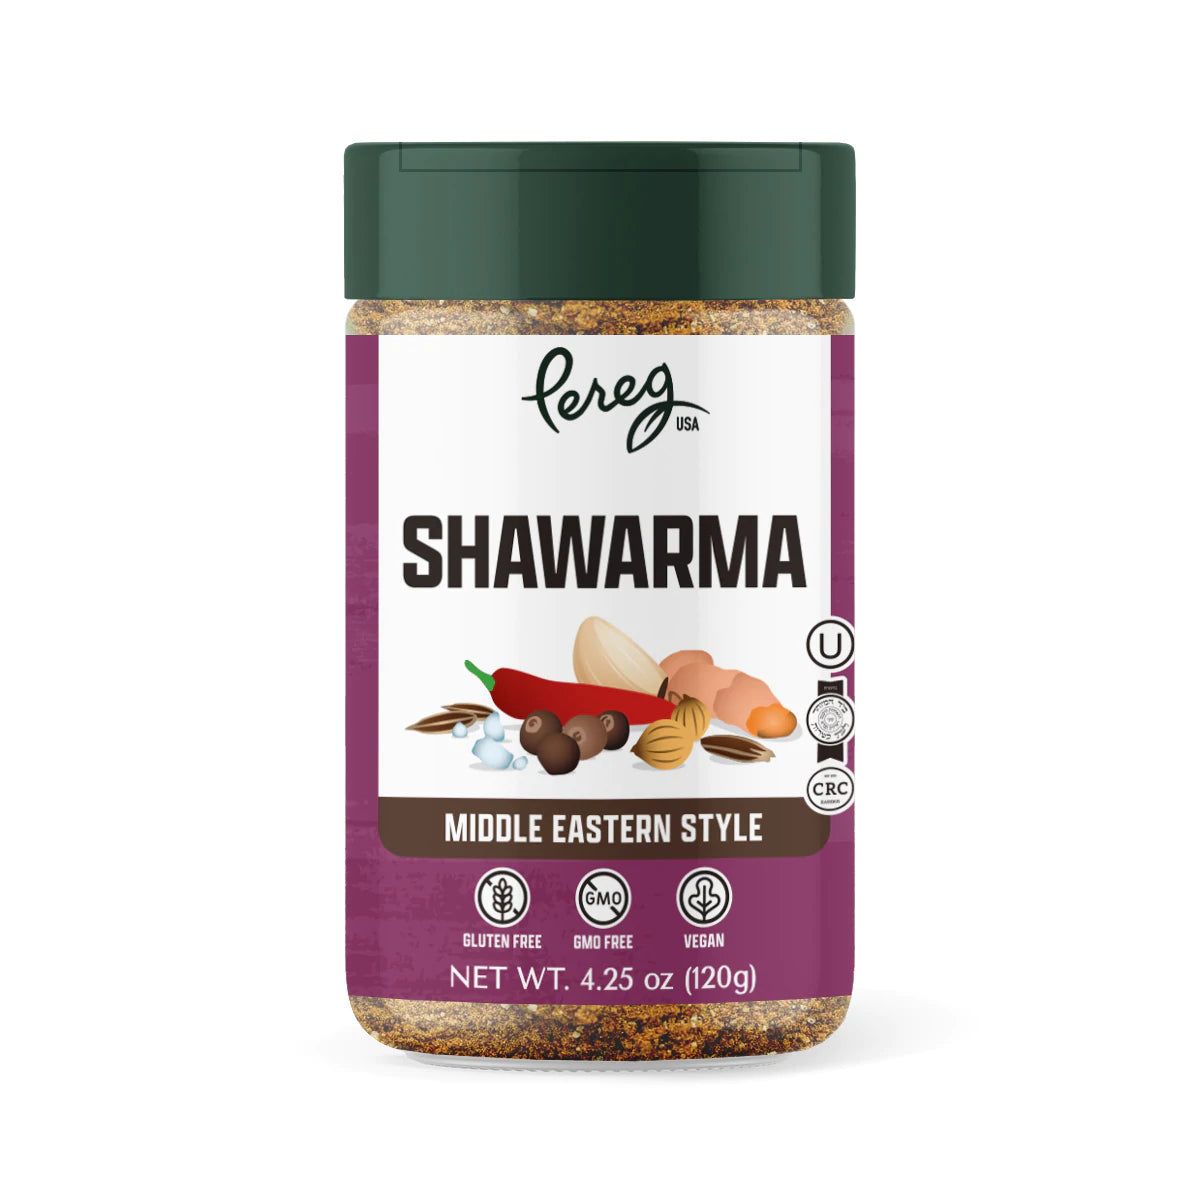 Pereg Shawarma Spice